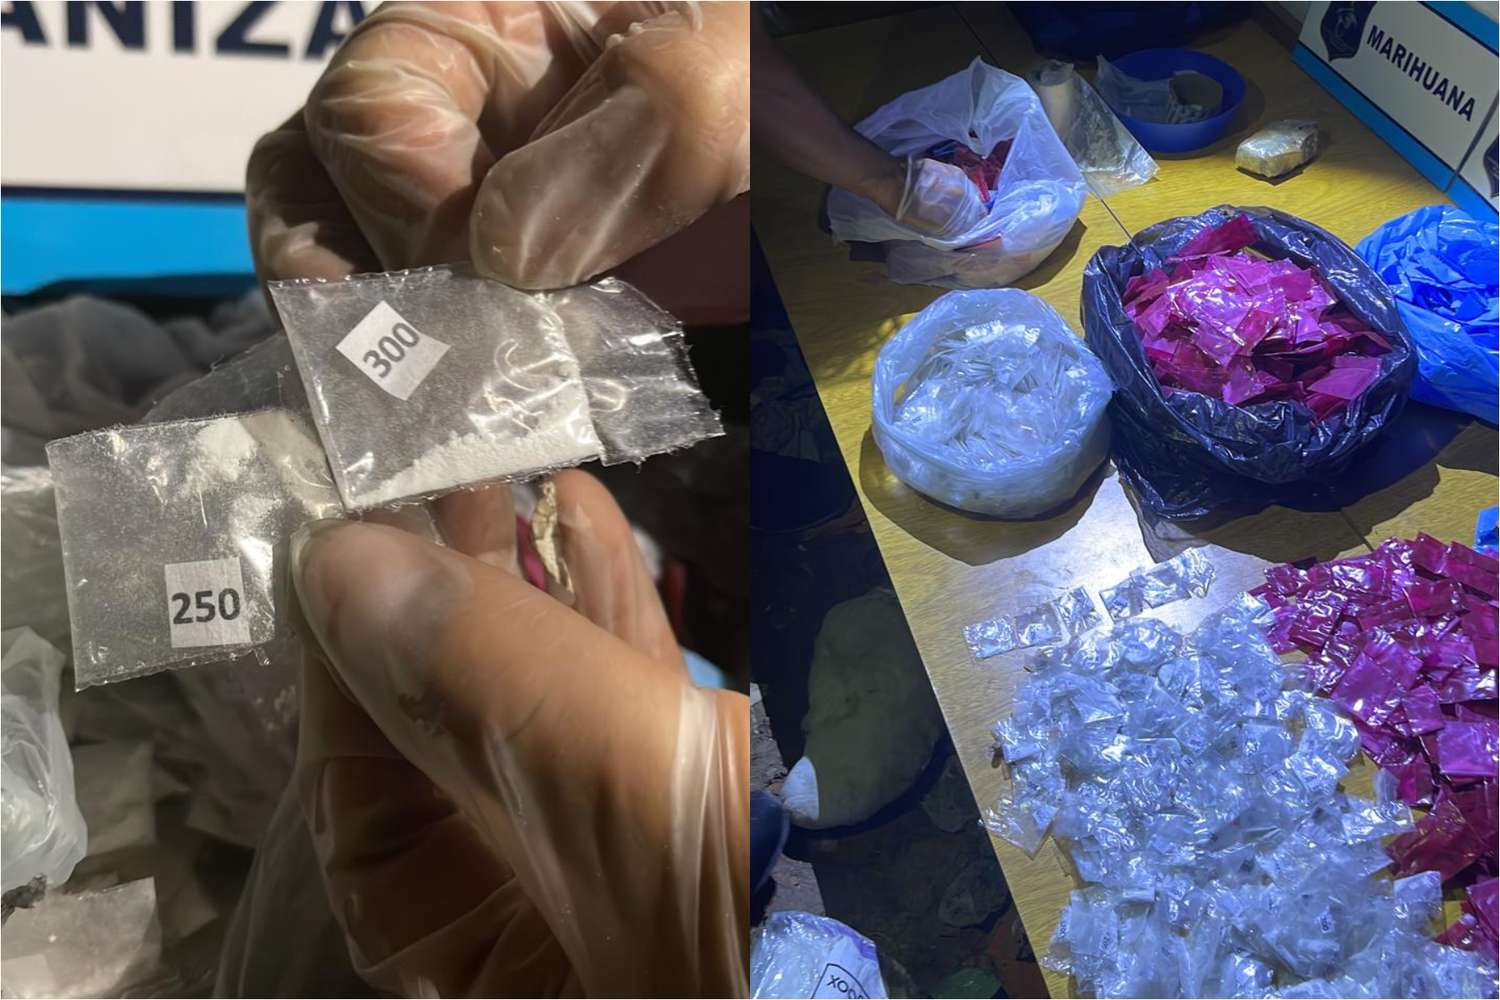 Cocaína “envenenada”: la alerta epidemiológica también llegó a San Pedro